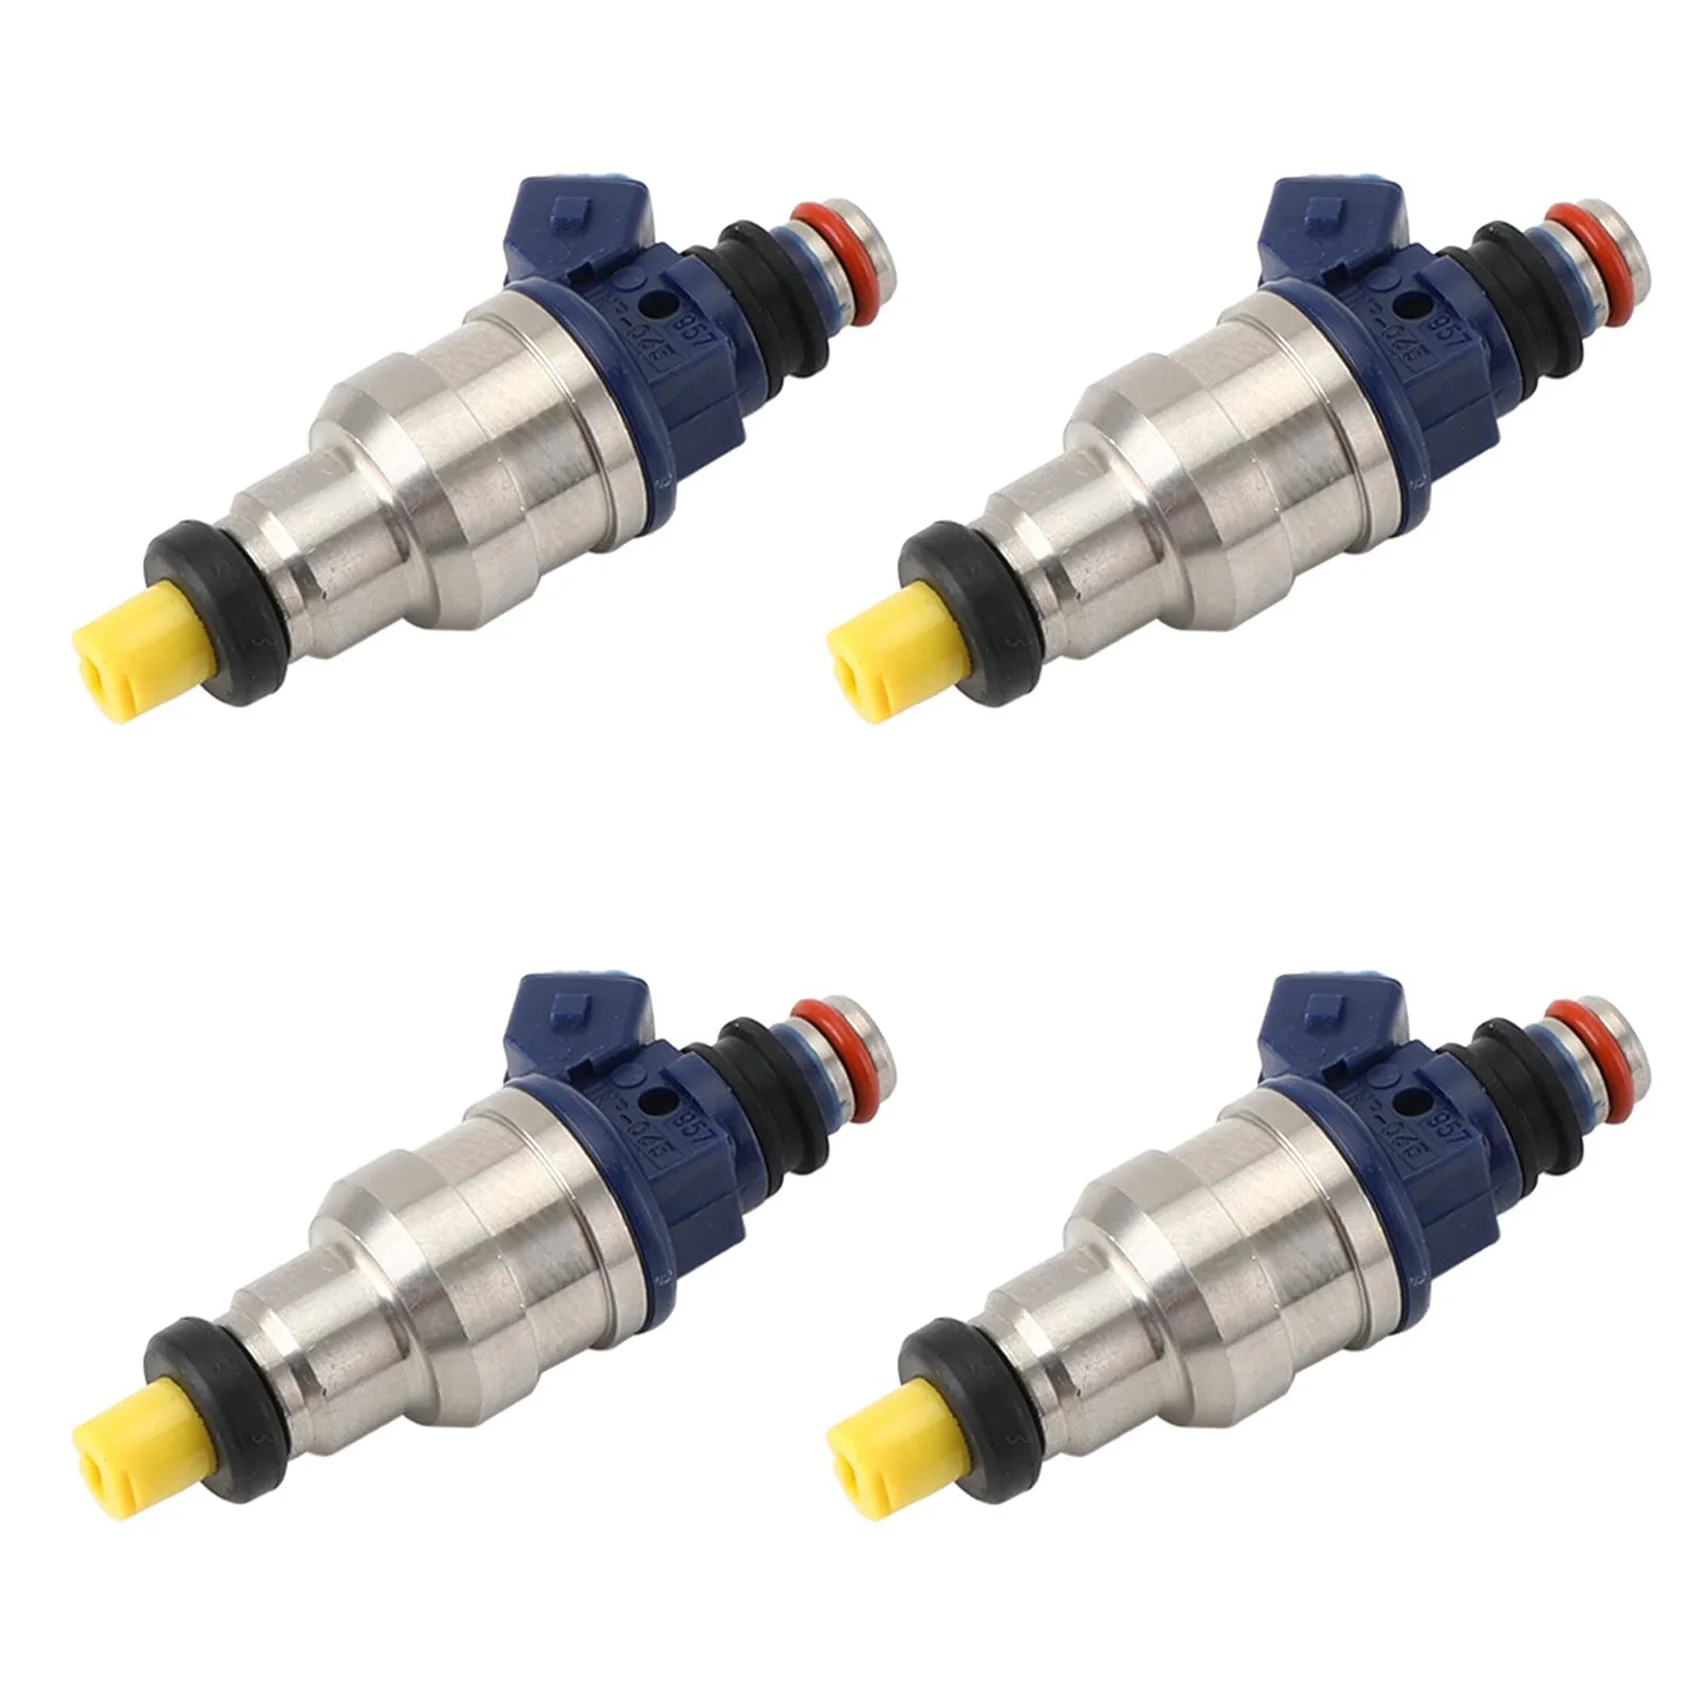 

4Pcs Fuel Injectors Set Fit for Mitsubishi 2.4L L4 1994-1999 842-12147 MDH275 INP-065